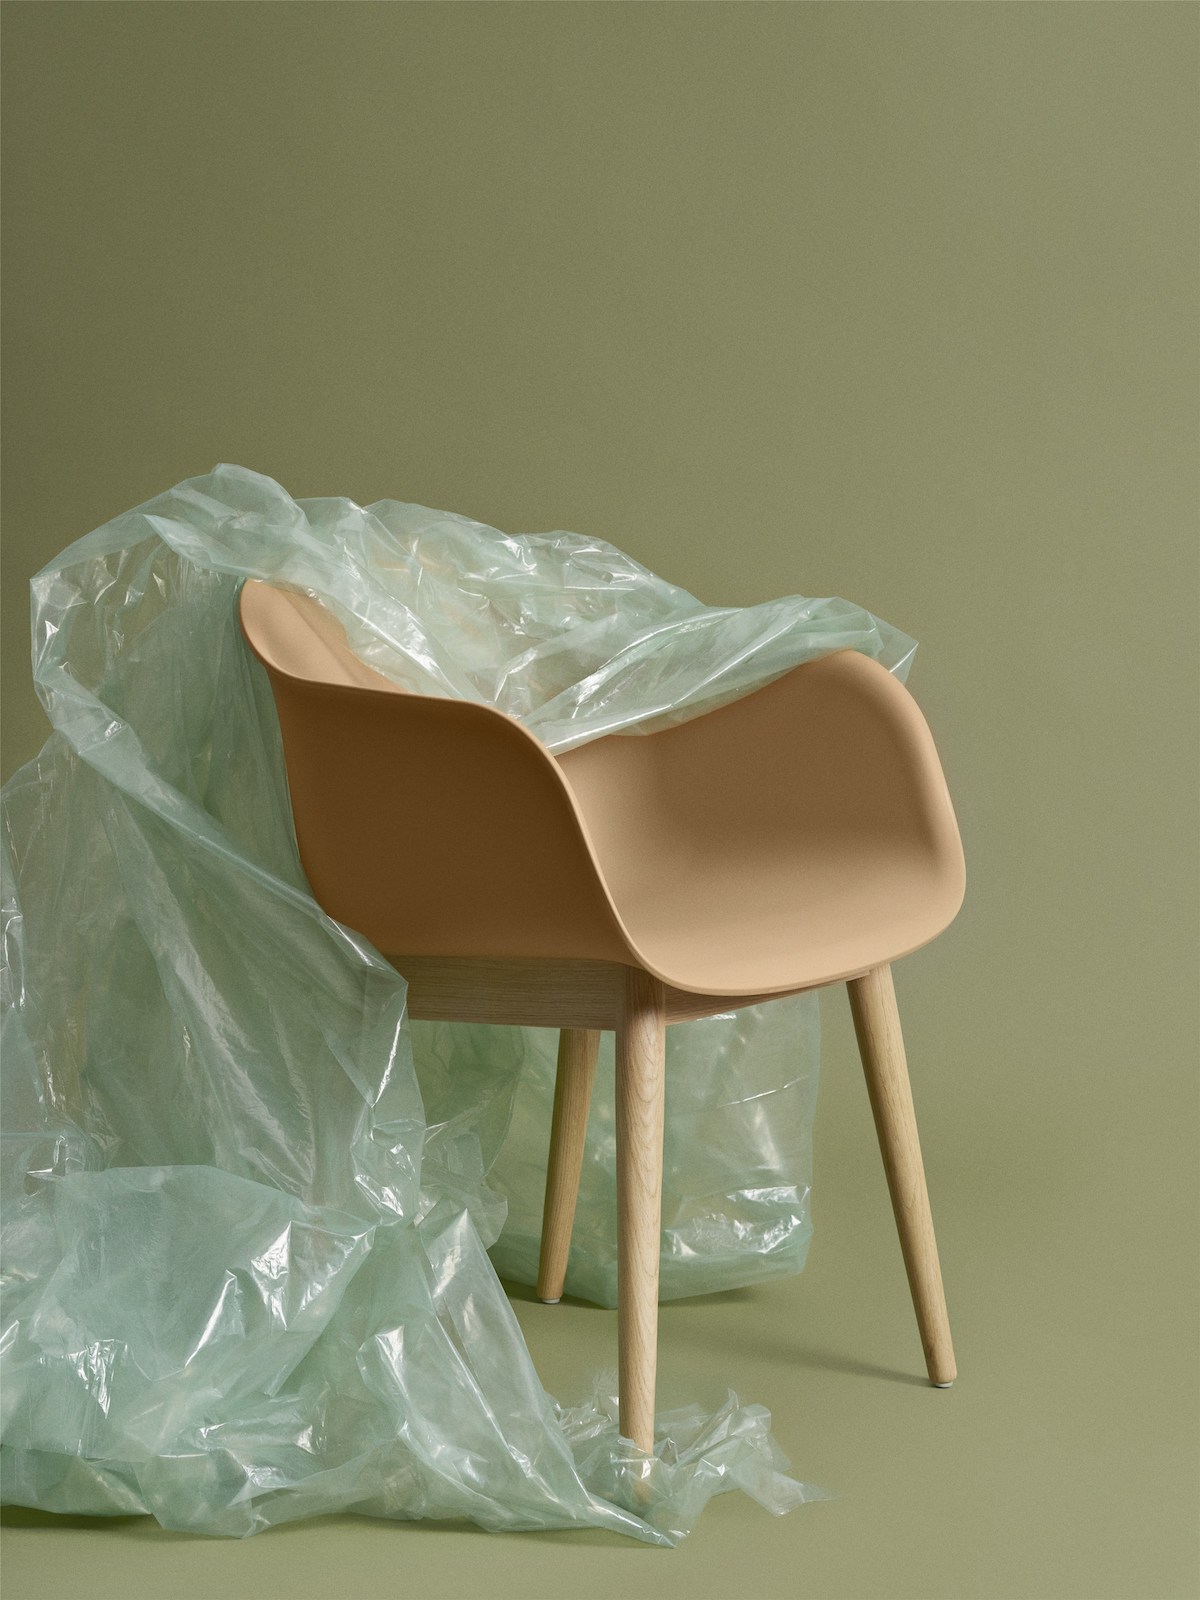 Muuto Fiber Chair. Modell mit Armlehnen und Holzbasis, Kunststofffolie hängt halb über dem Stuhl. 